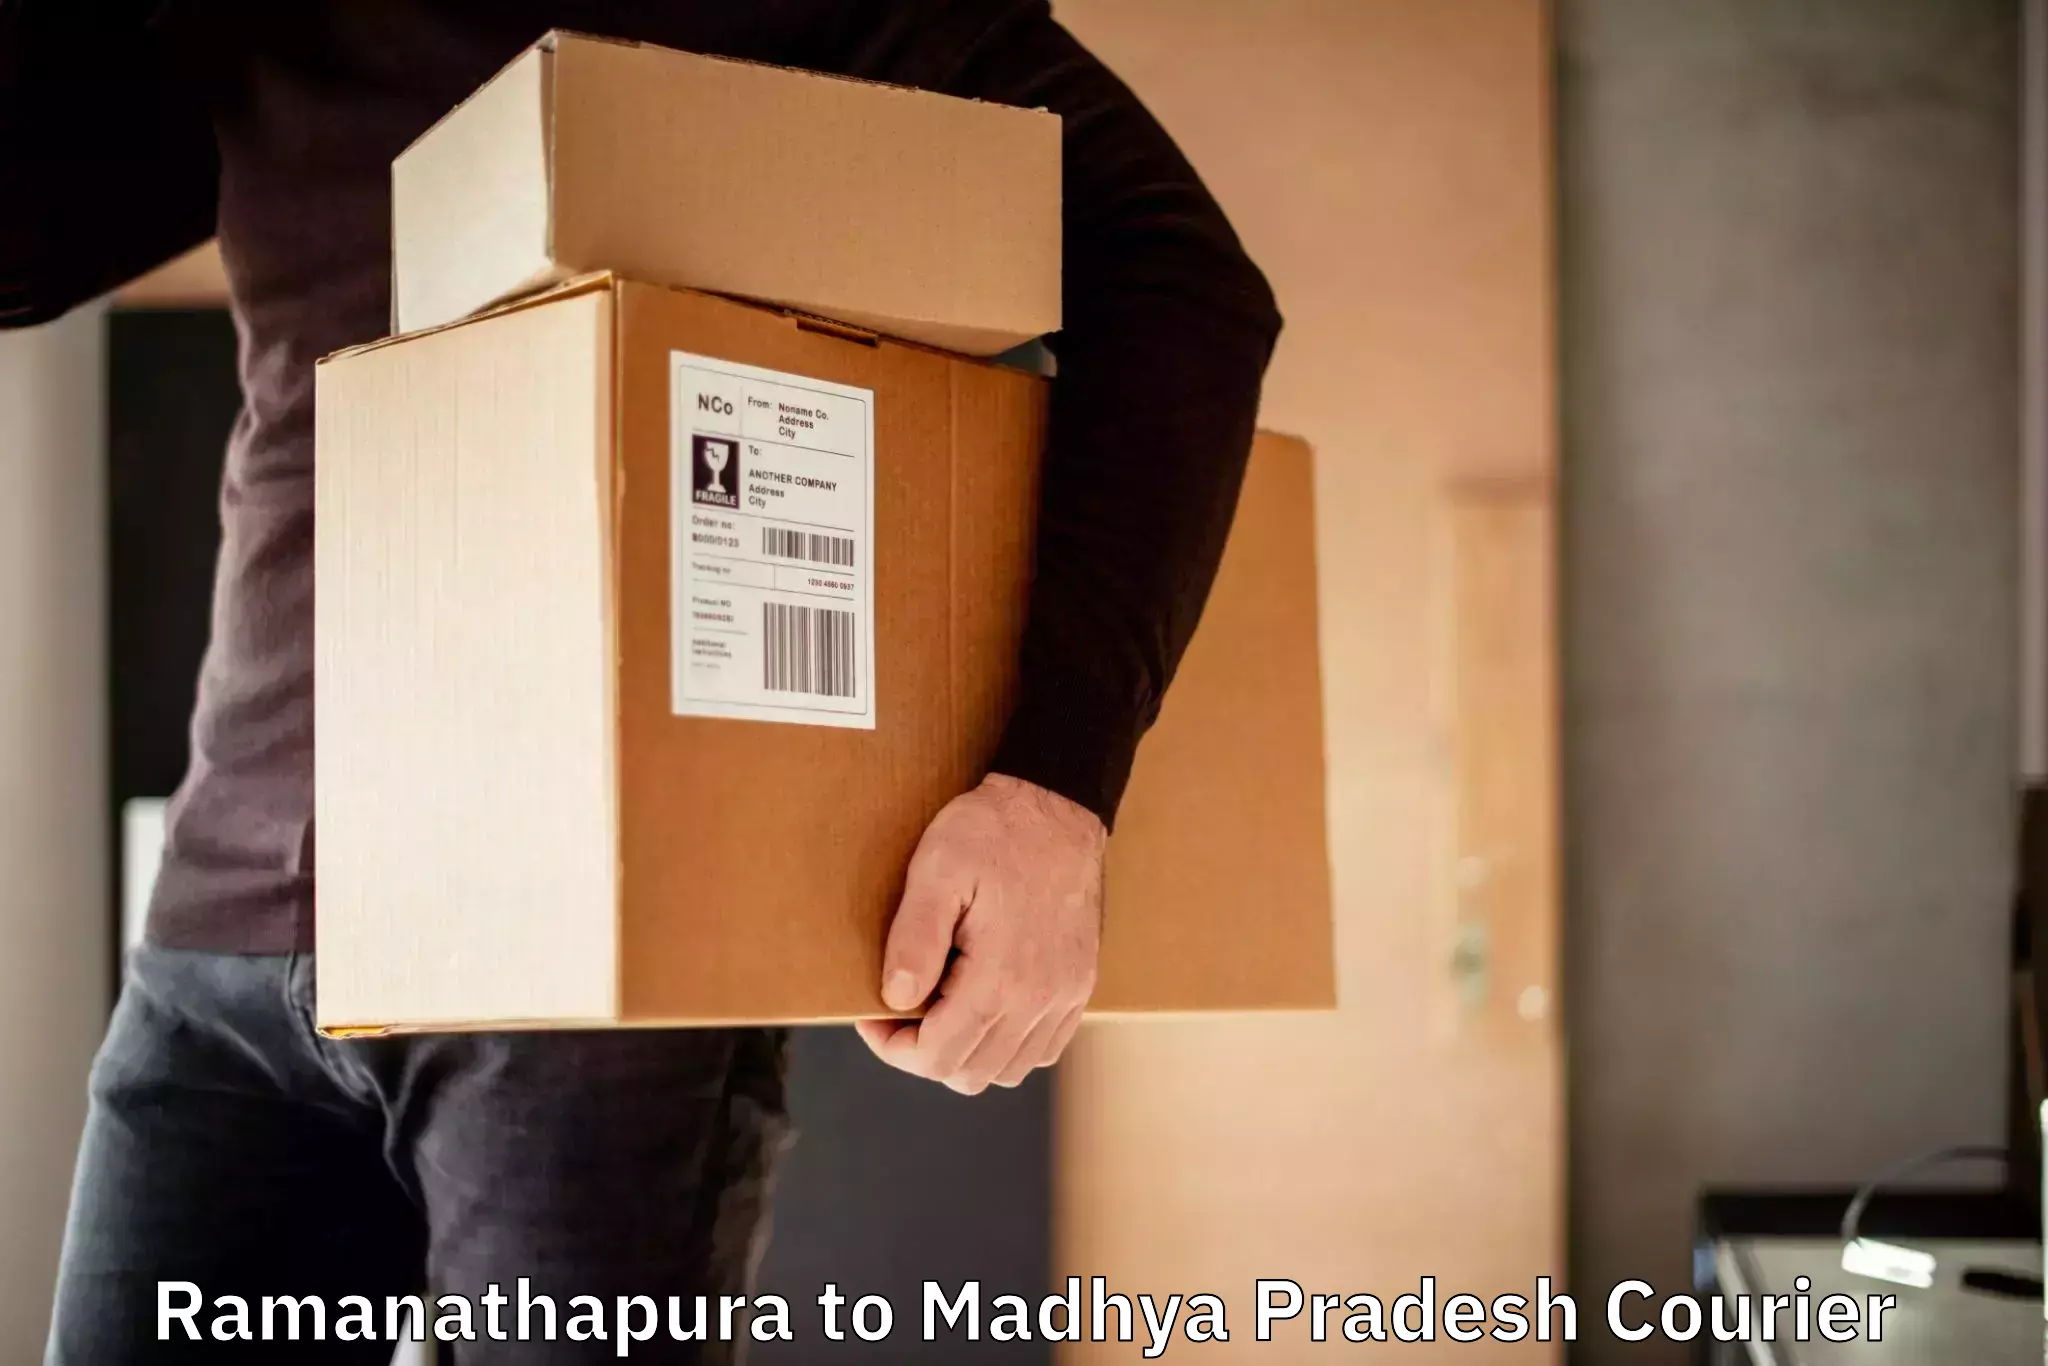 Urgent courier needs Ramanathapura to Madhya Pradesh